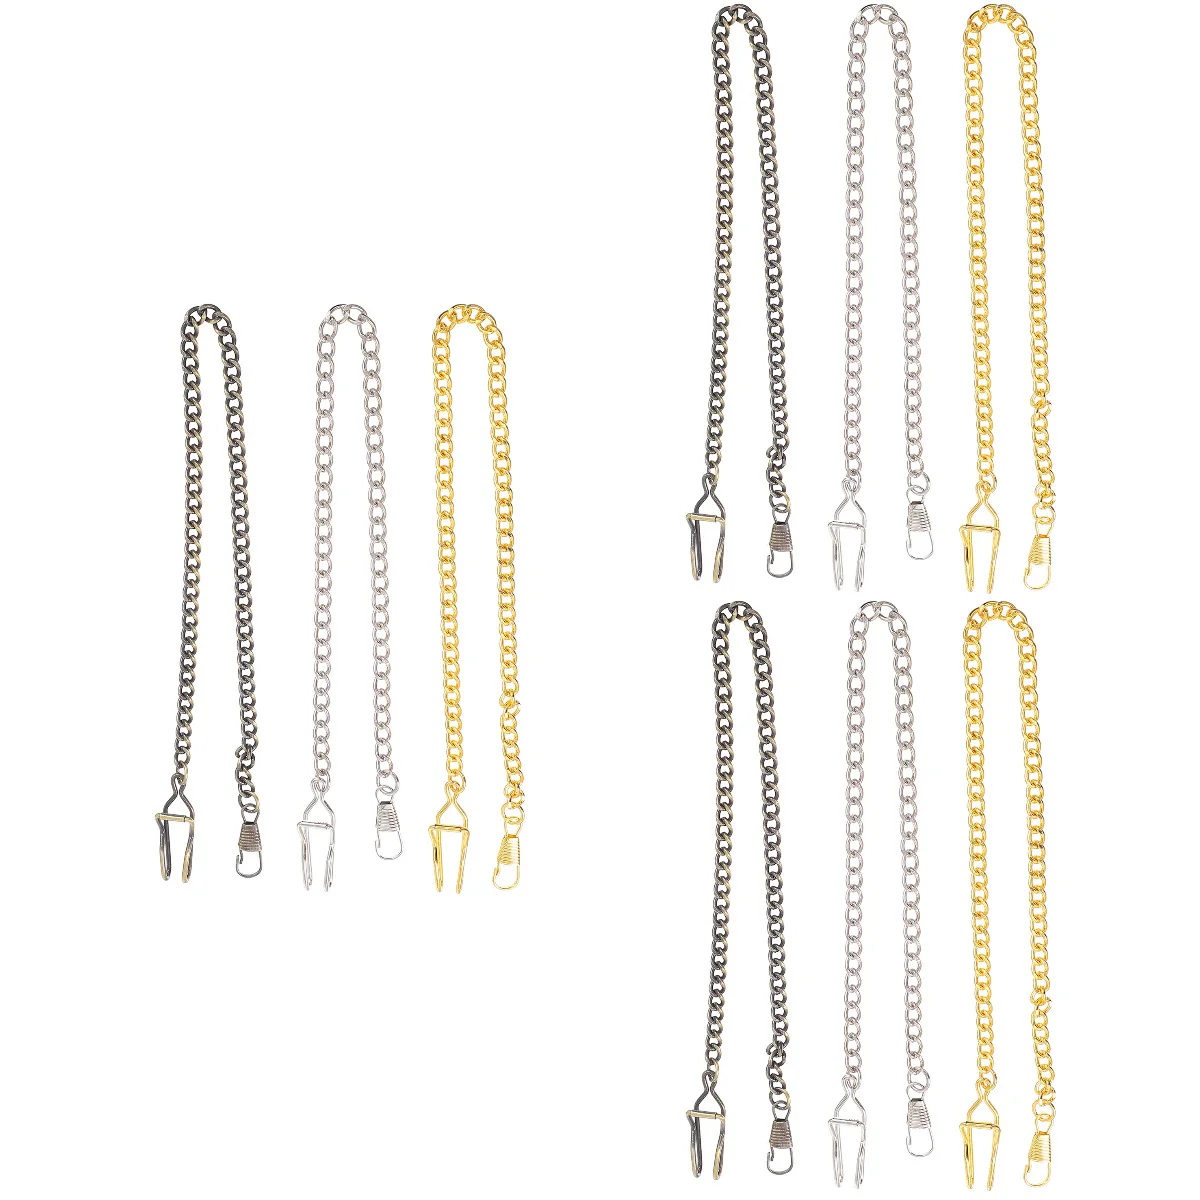 

9 шт. винтажные карманные часы, цепочки для изготовления ожерелья, металлические винтажные подвесные жилеты «сделай сам»